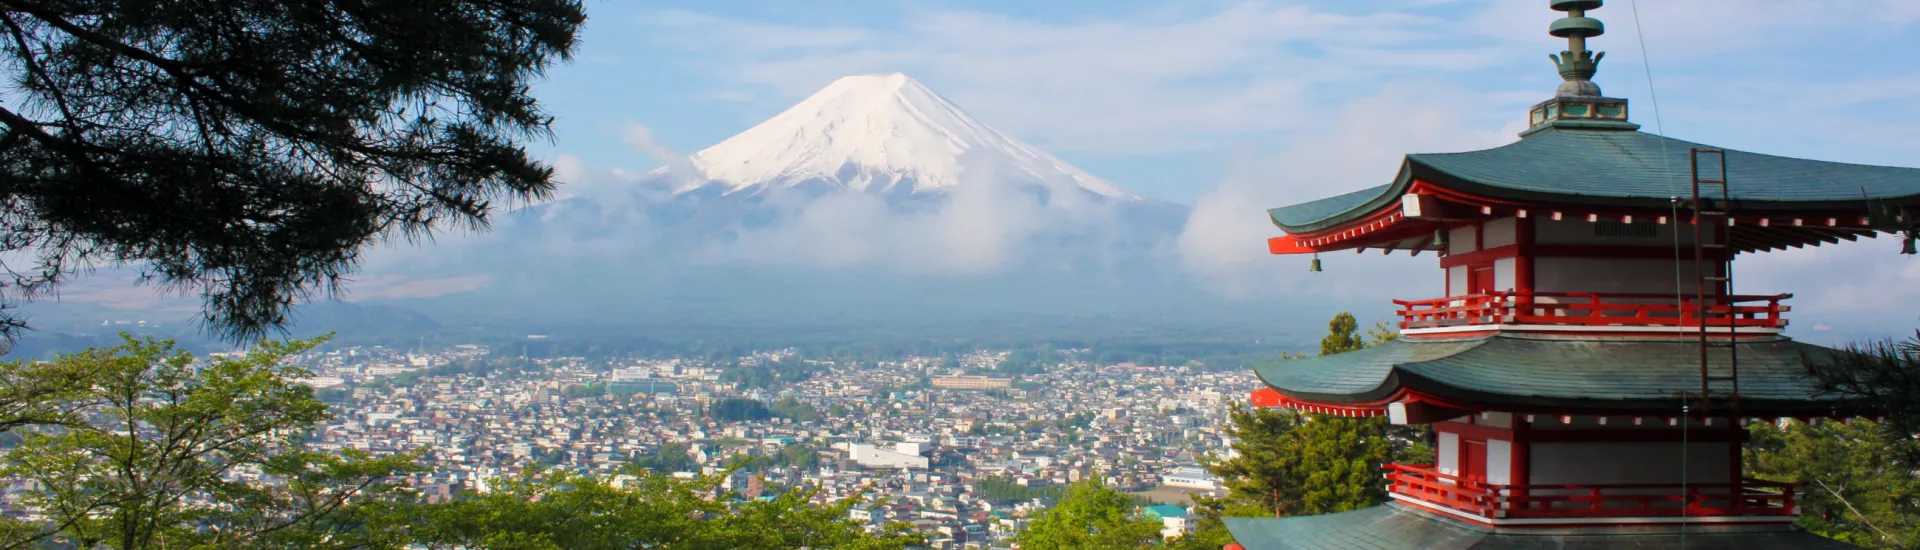 Fuji in Japan